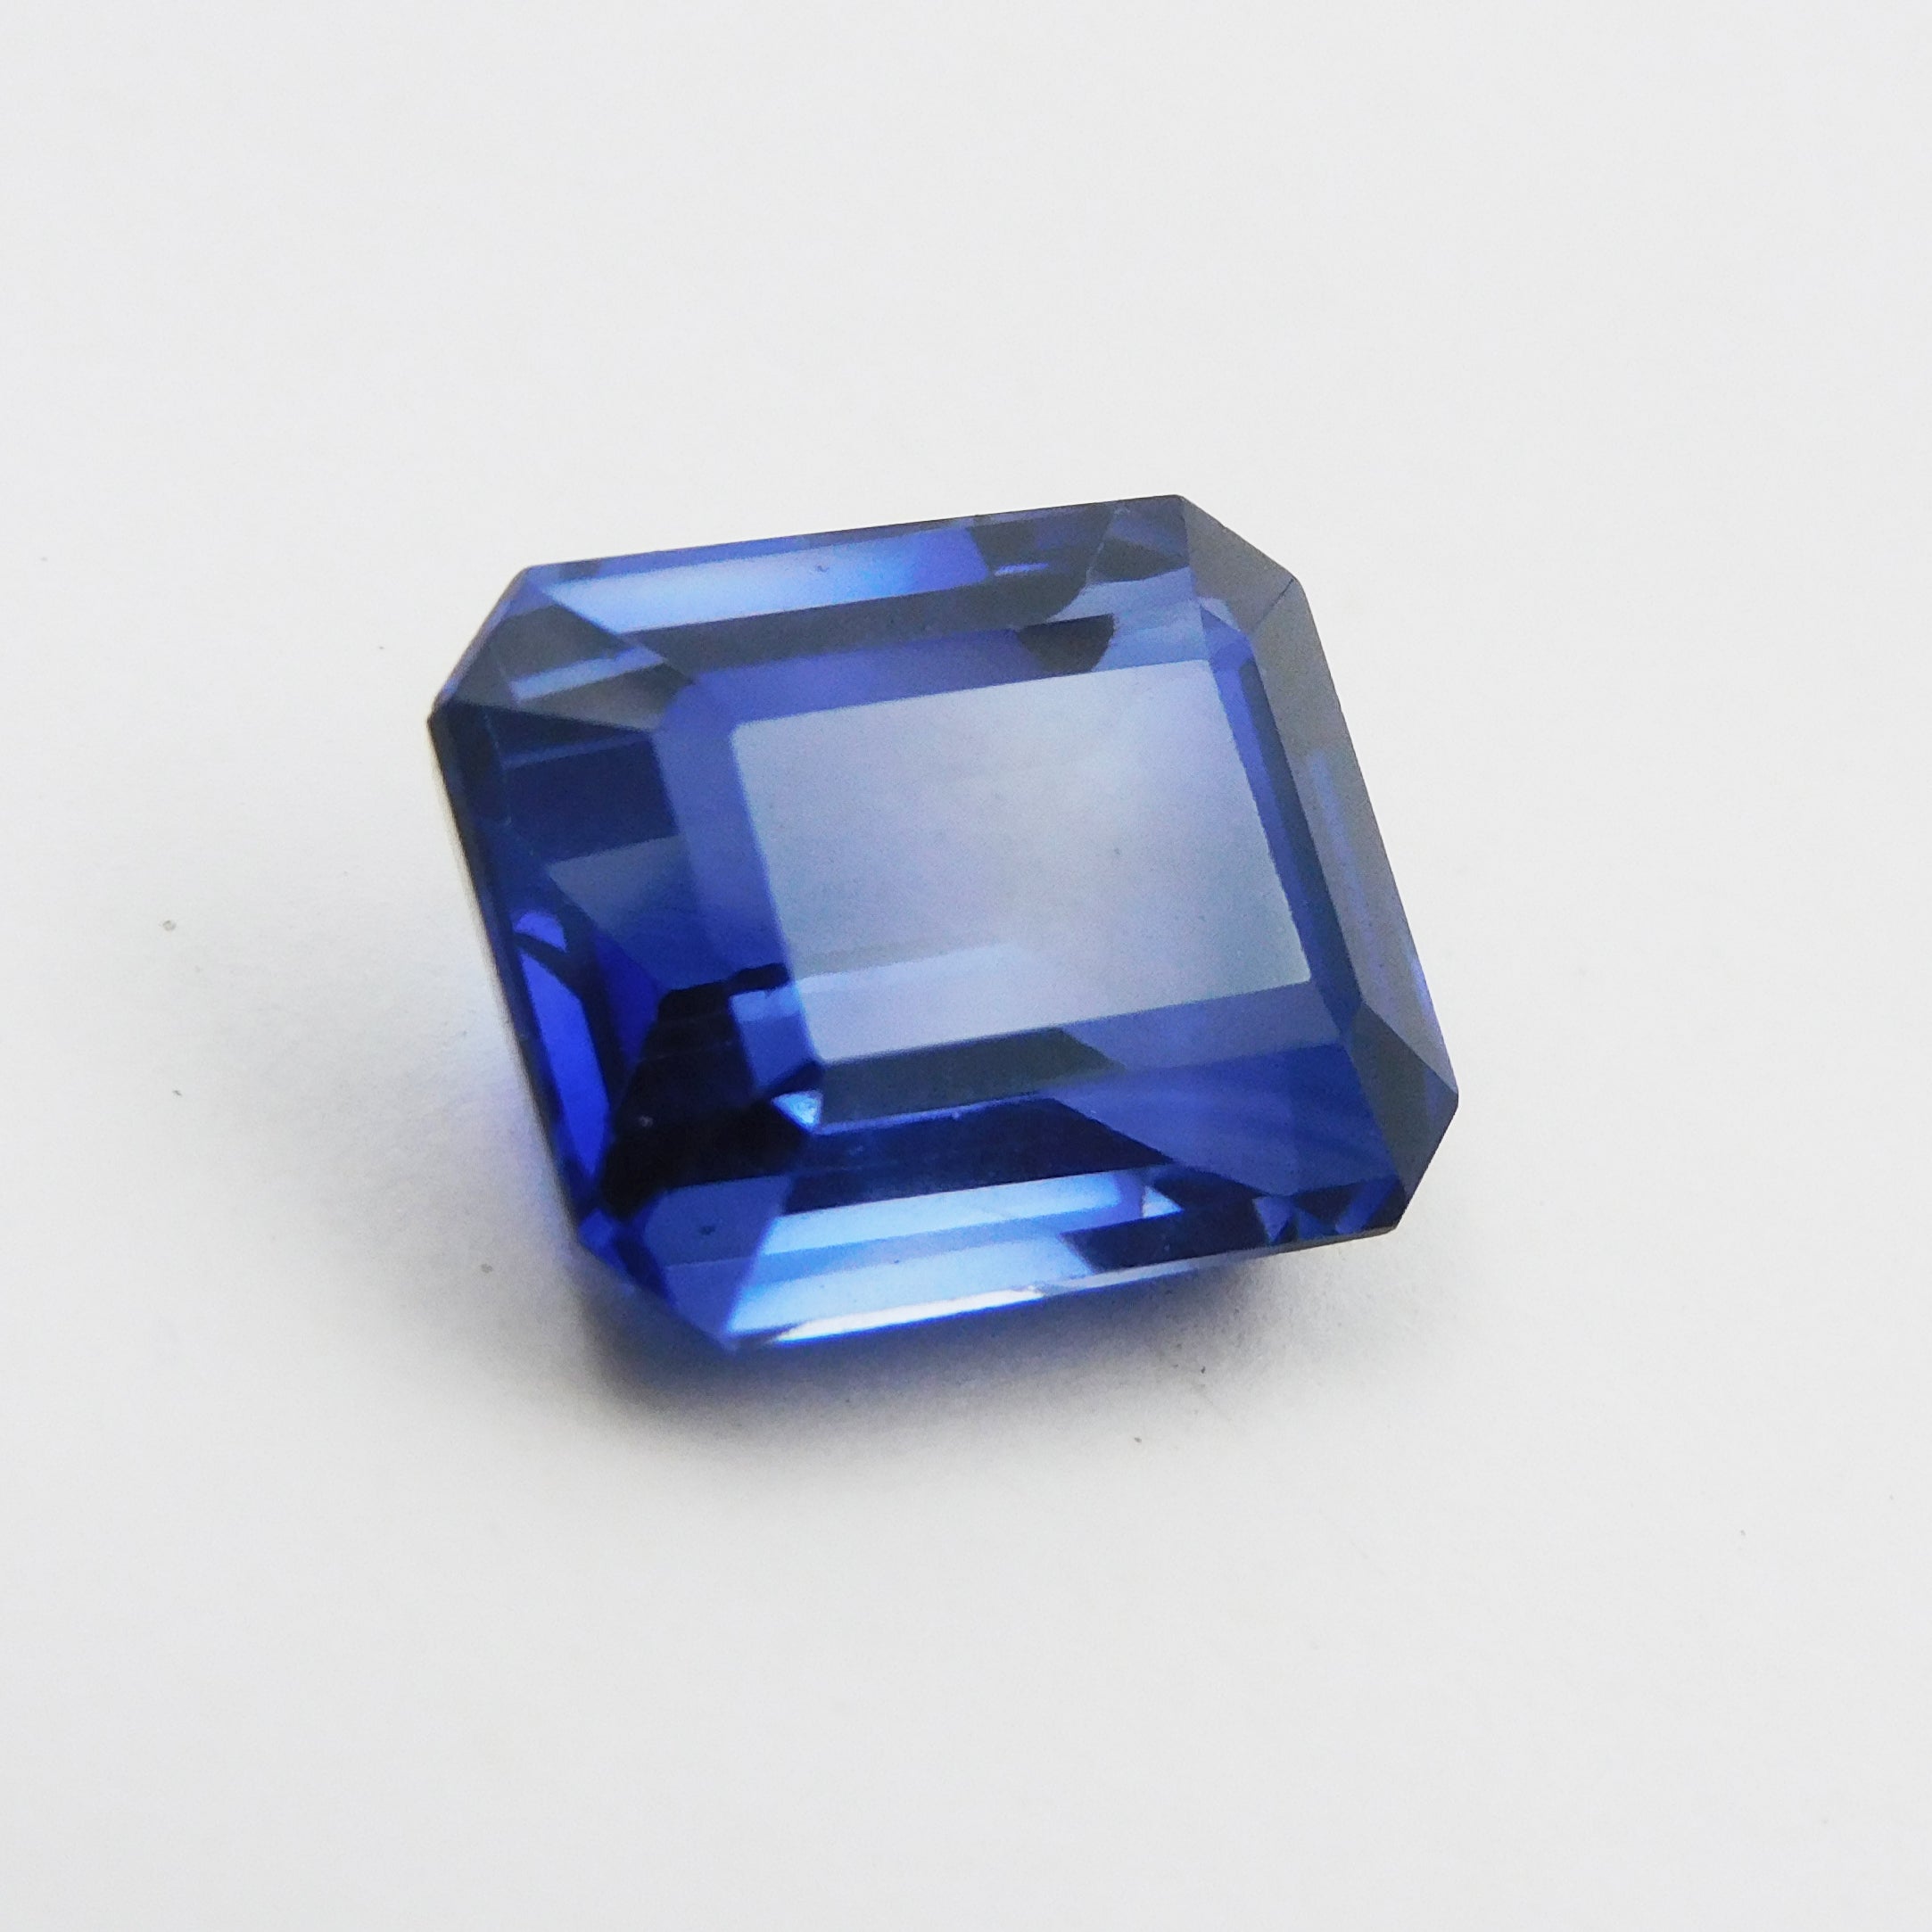 Glorious TANZANITE Gem 9.53 Carat Blue Tanzanite Emerald Cut Natural Certified Loose Gemstone | Best Price On Tanzanite | Free Shipping & Gift